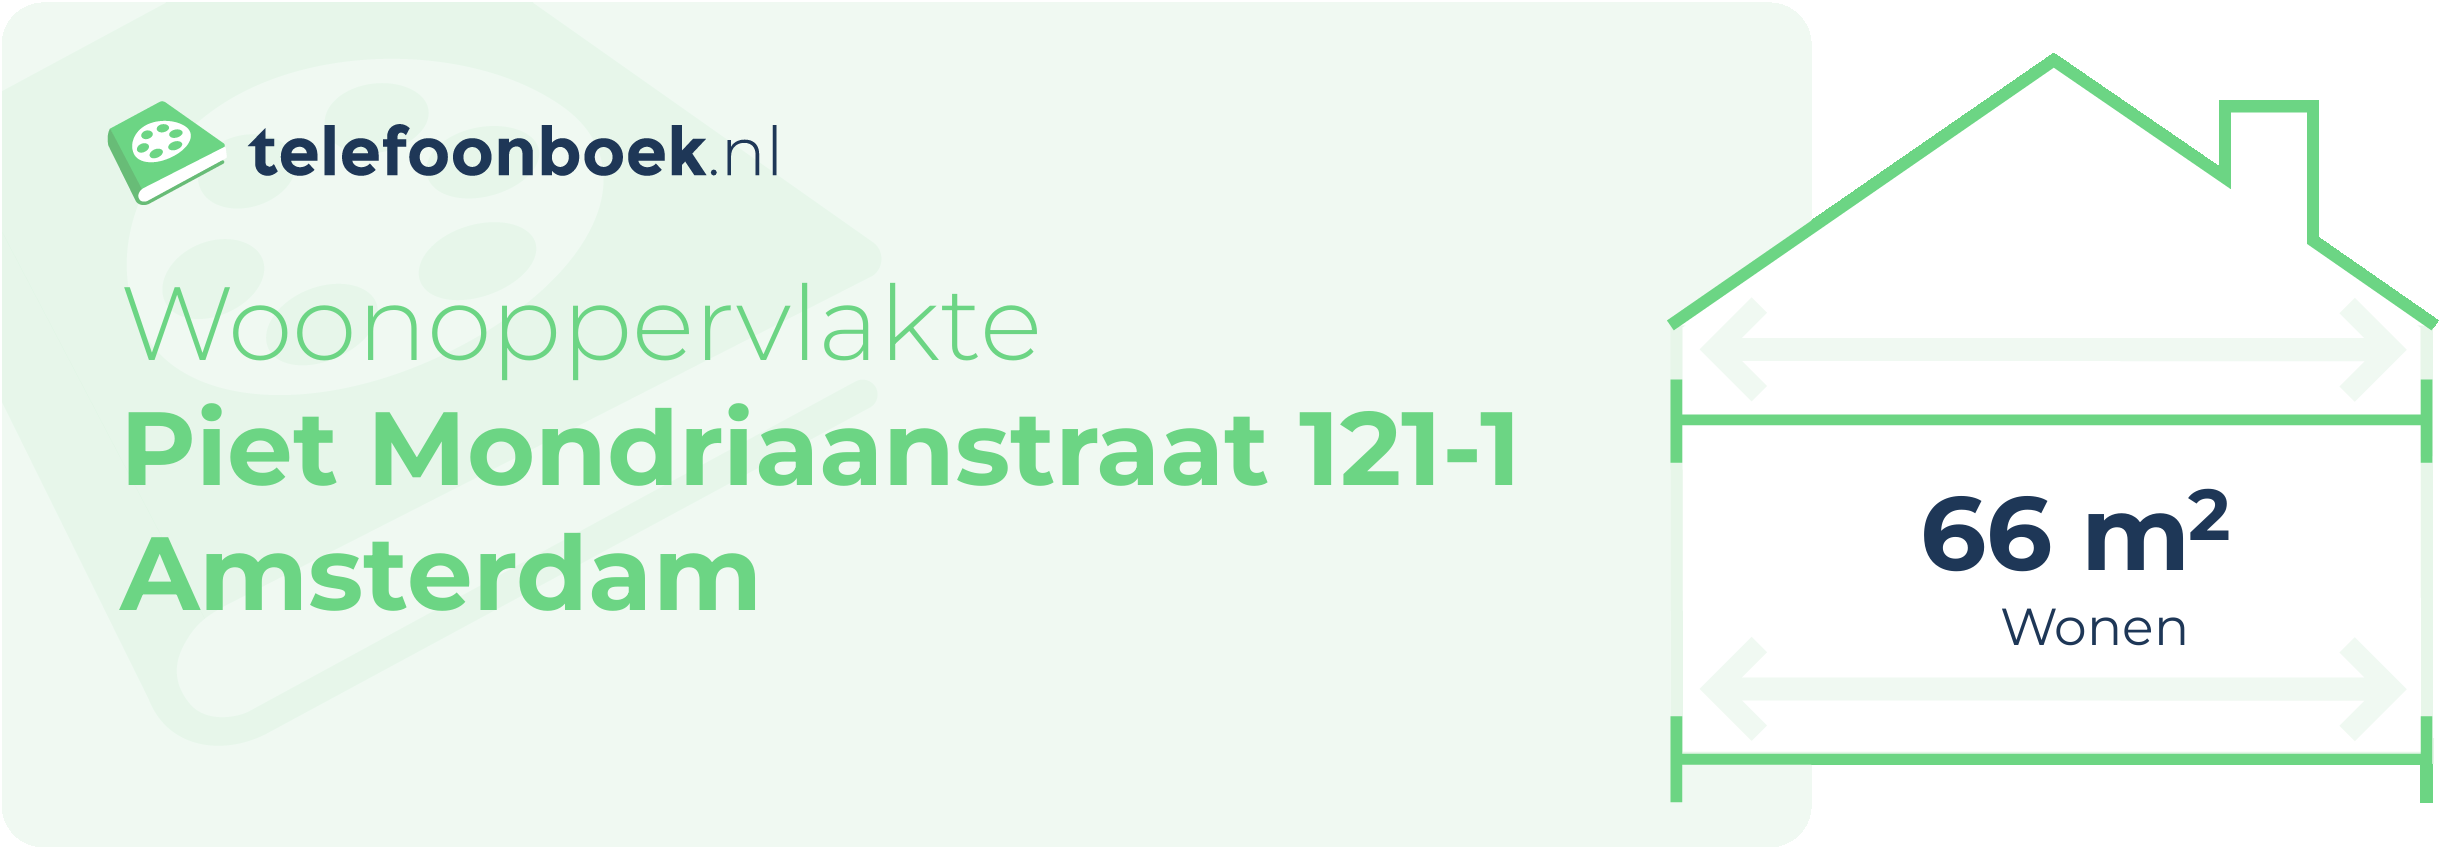 Woonoppervlakte Piet Mondriaanstraat 121-1 Amsterdam